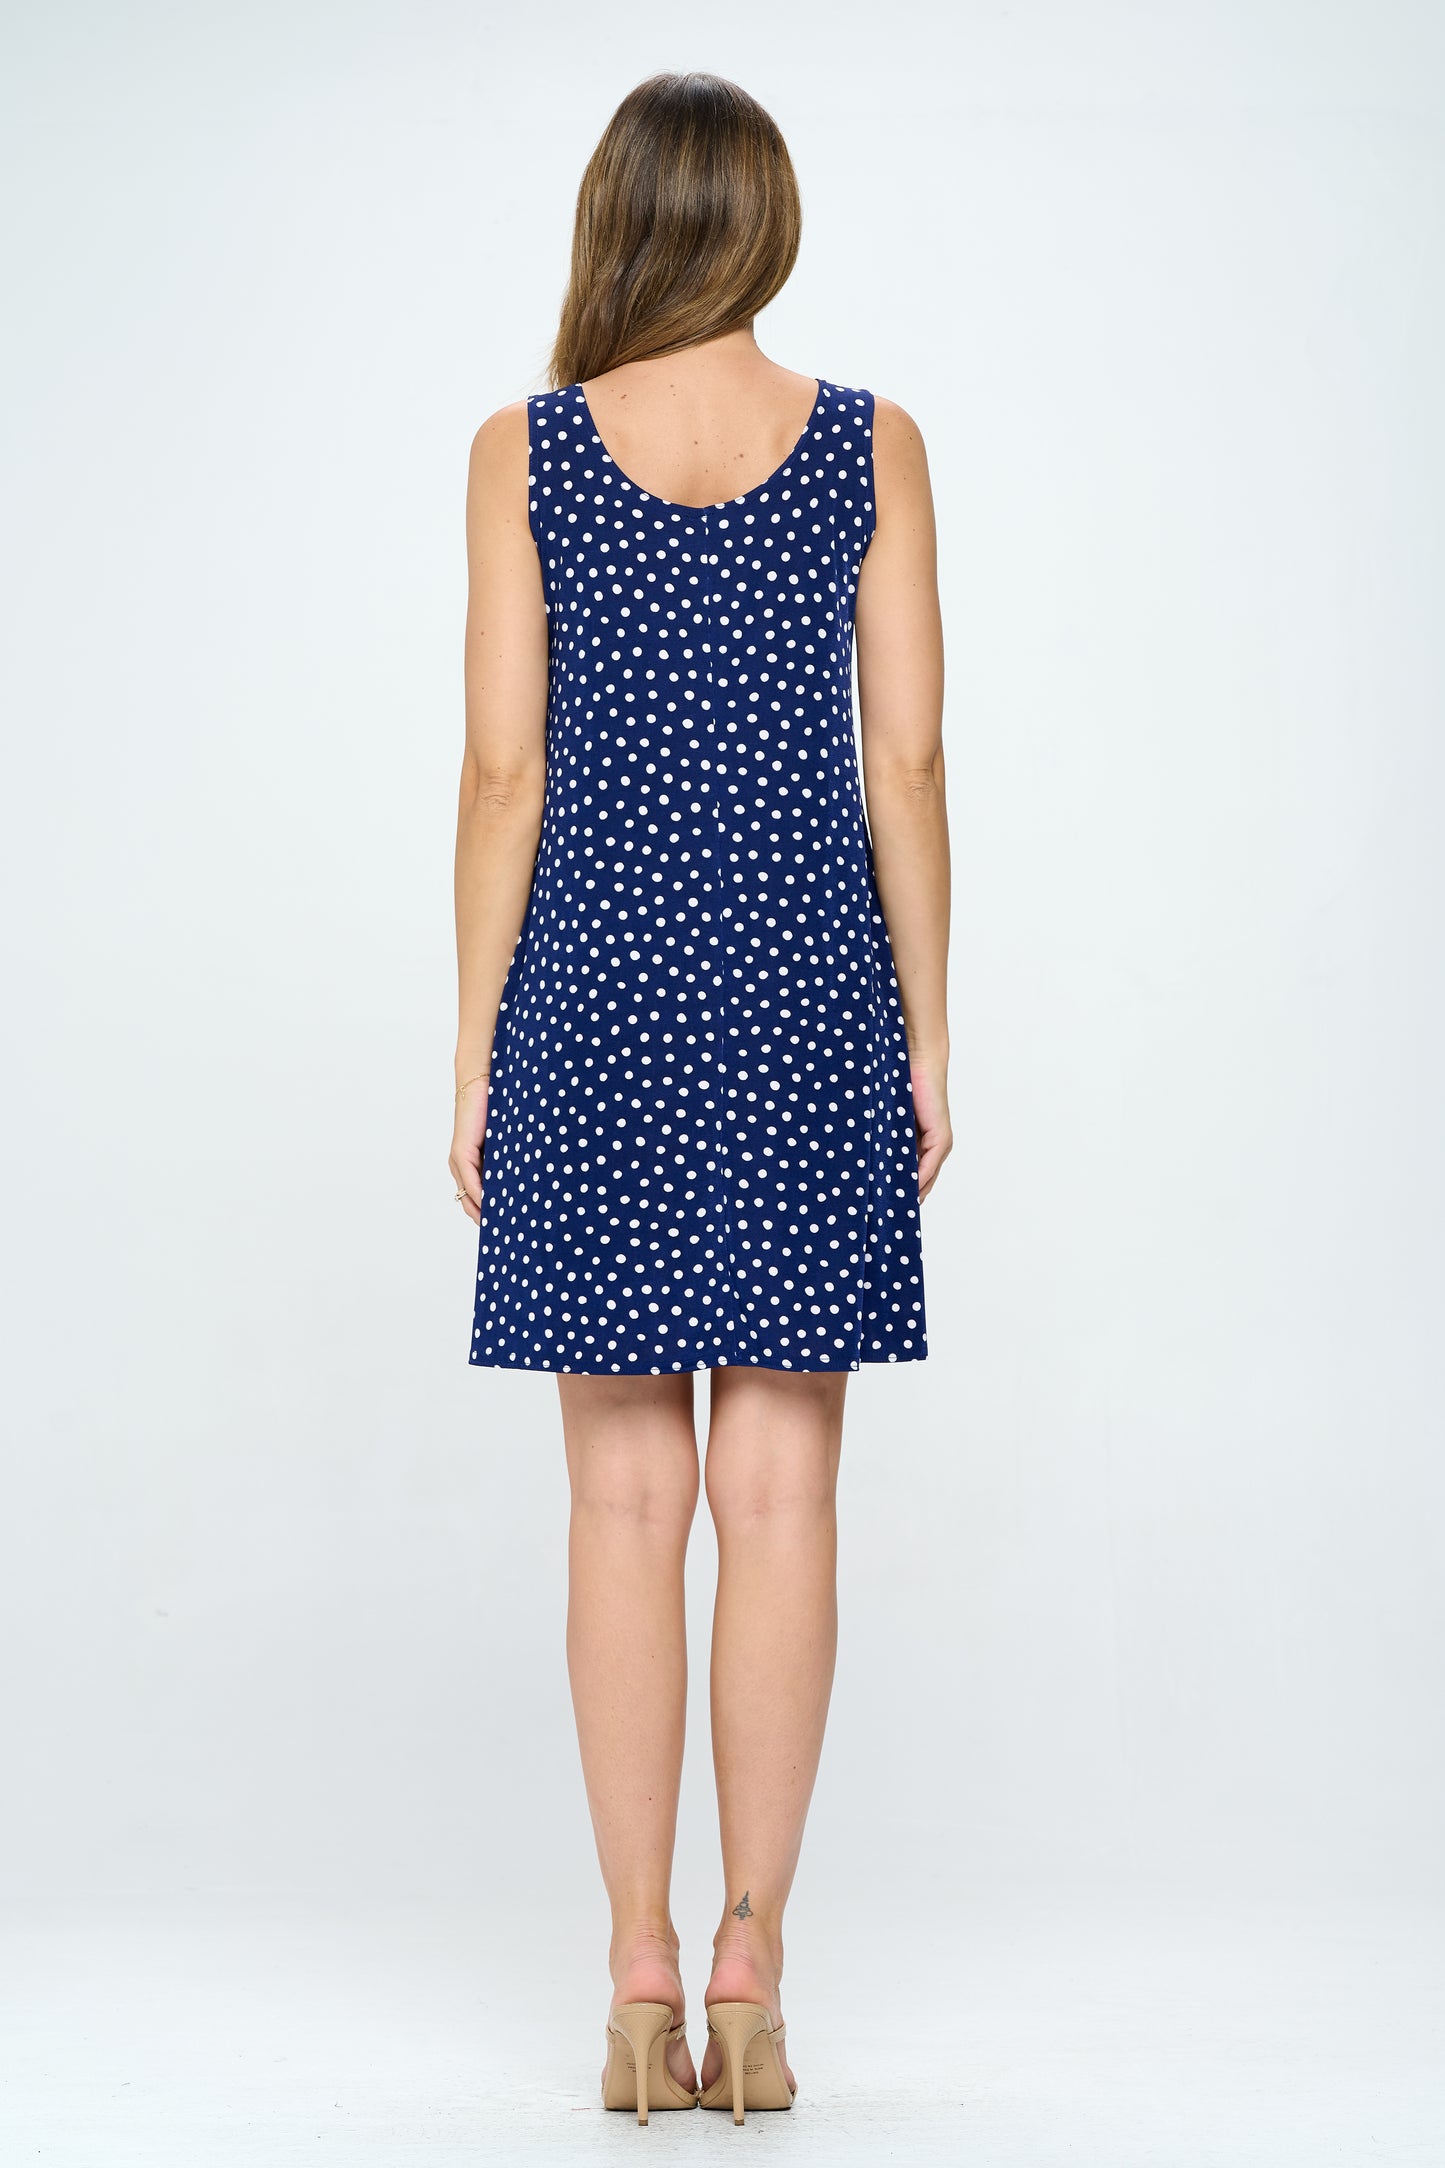 Women's Stretchy Missy Tank Dress Print-7003BN-TRP1-W032 - Jostar Online